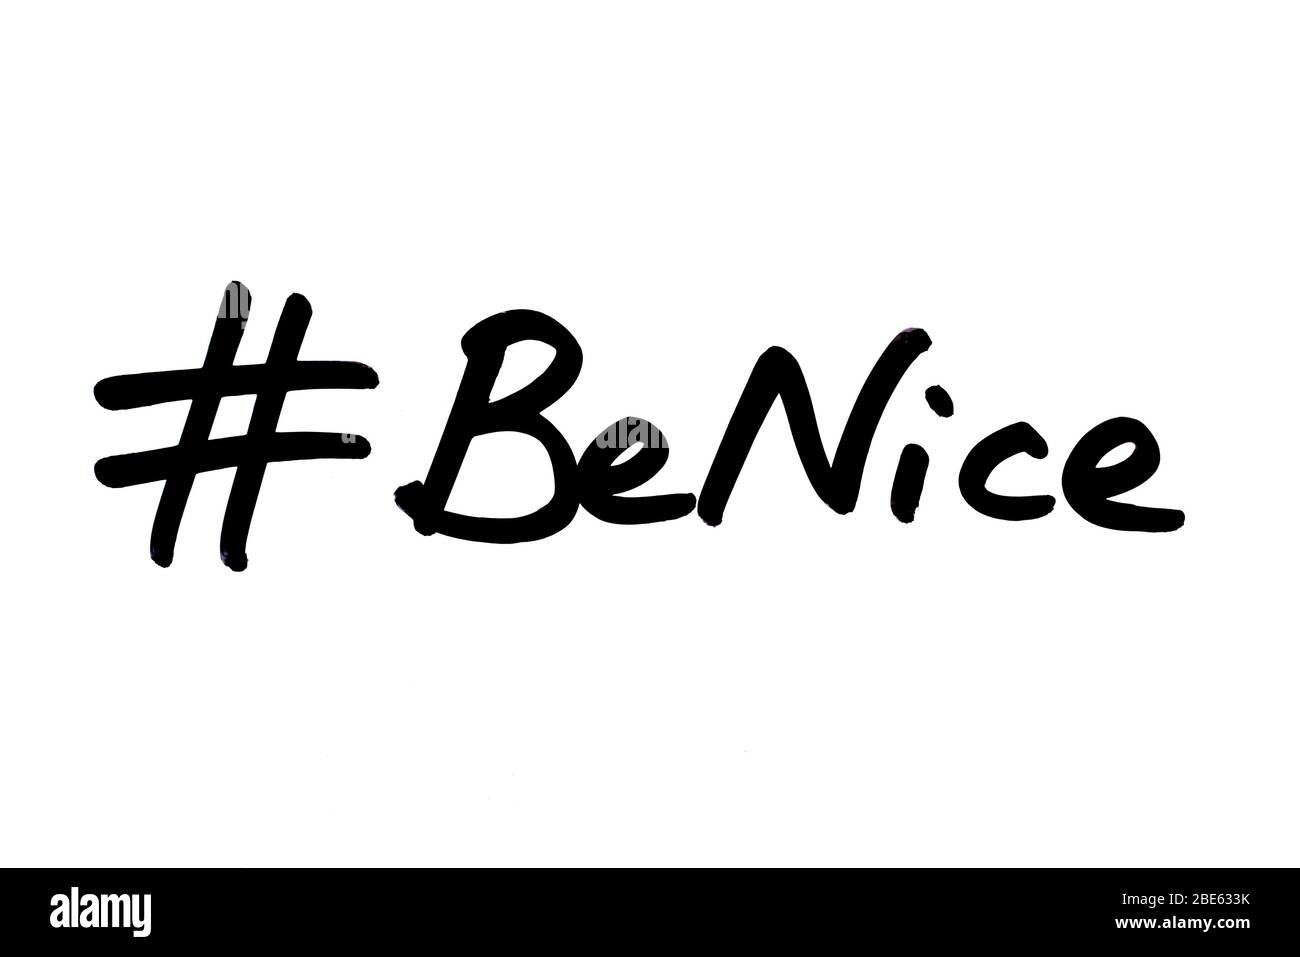 Hashtag Be Nice scritto a mano su sfondo bianco. Foto Stock